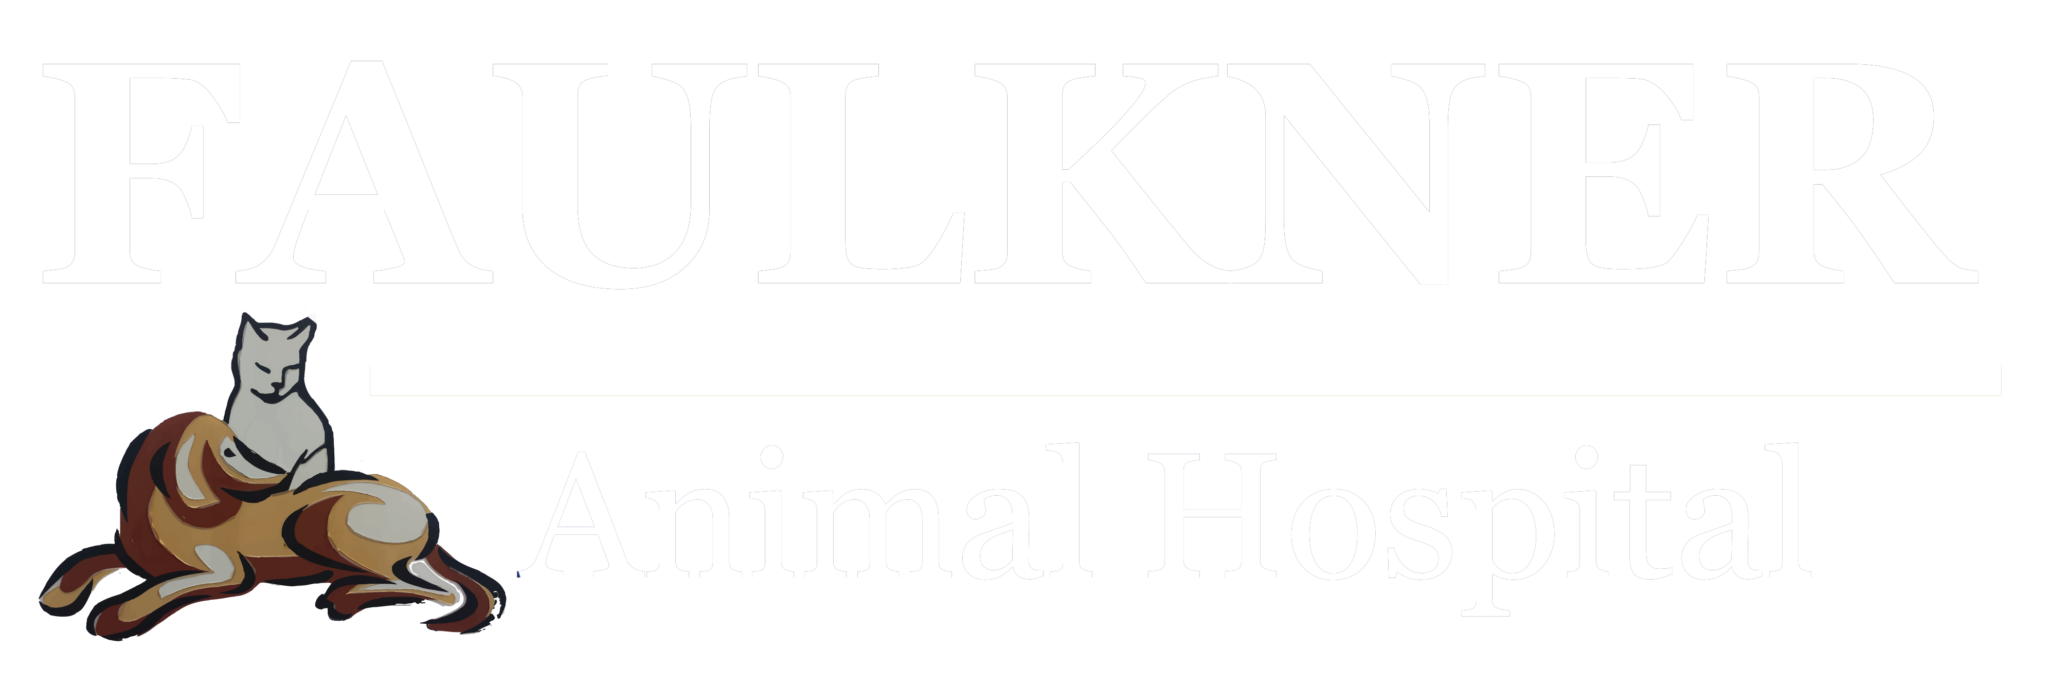 Faulkner Animal Hospital Lancaster SC logo white